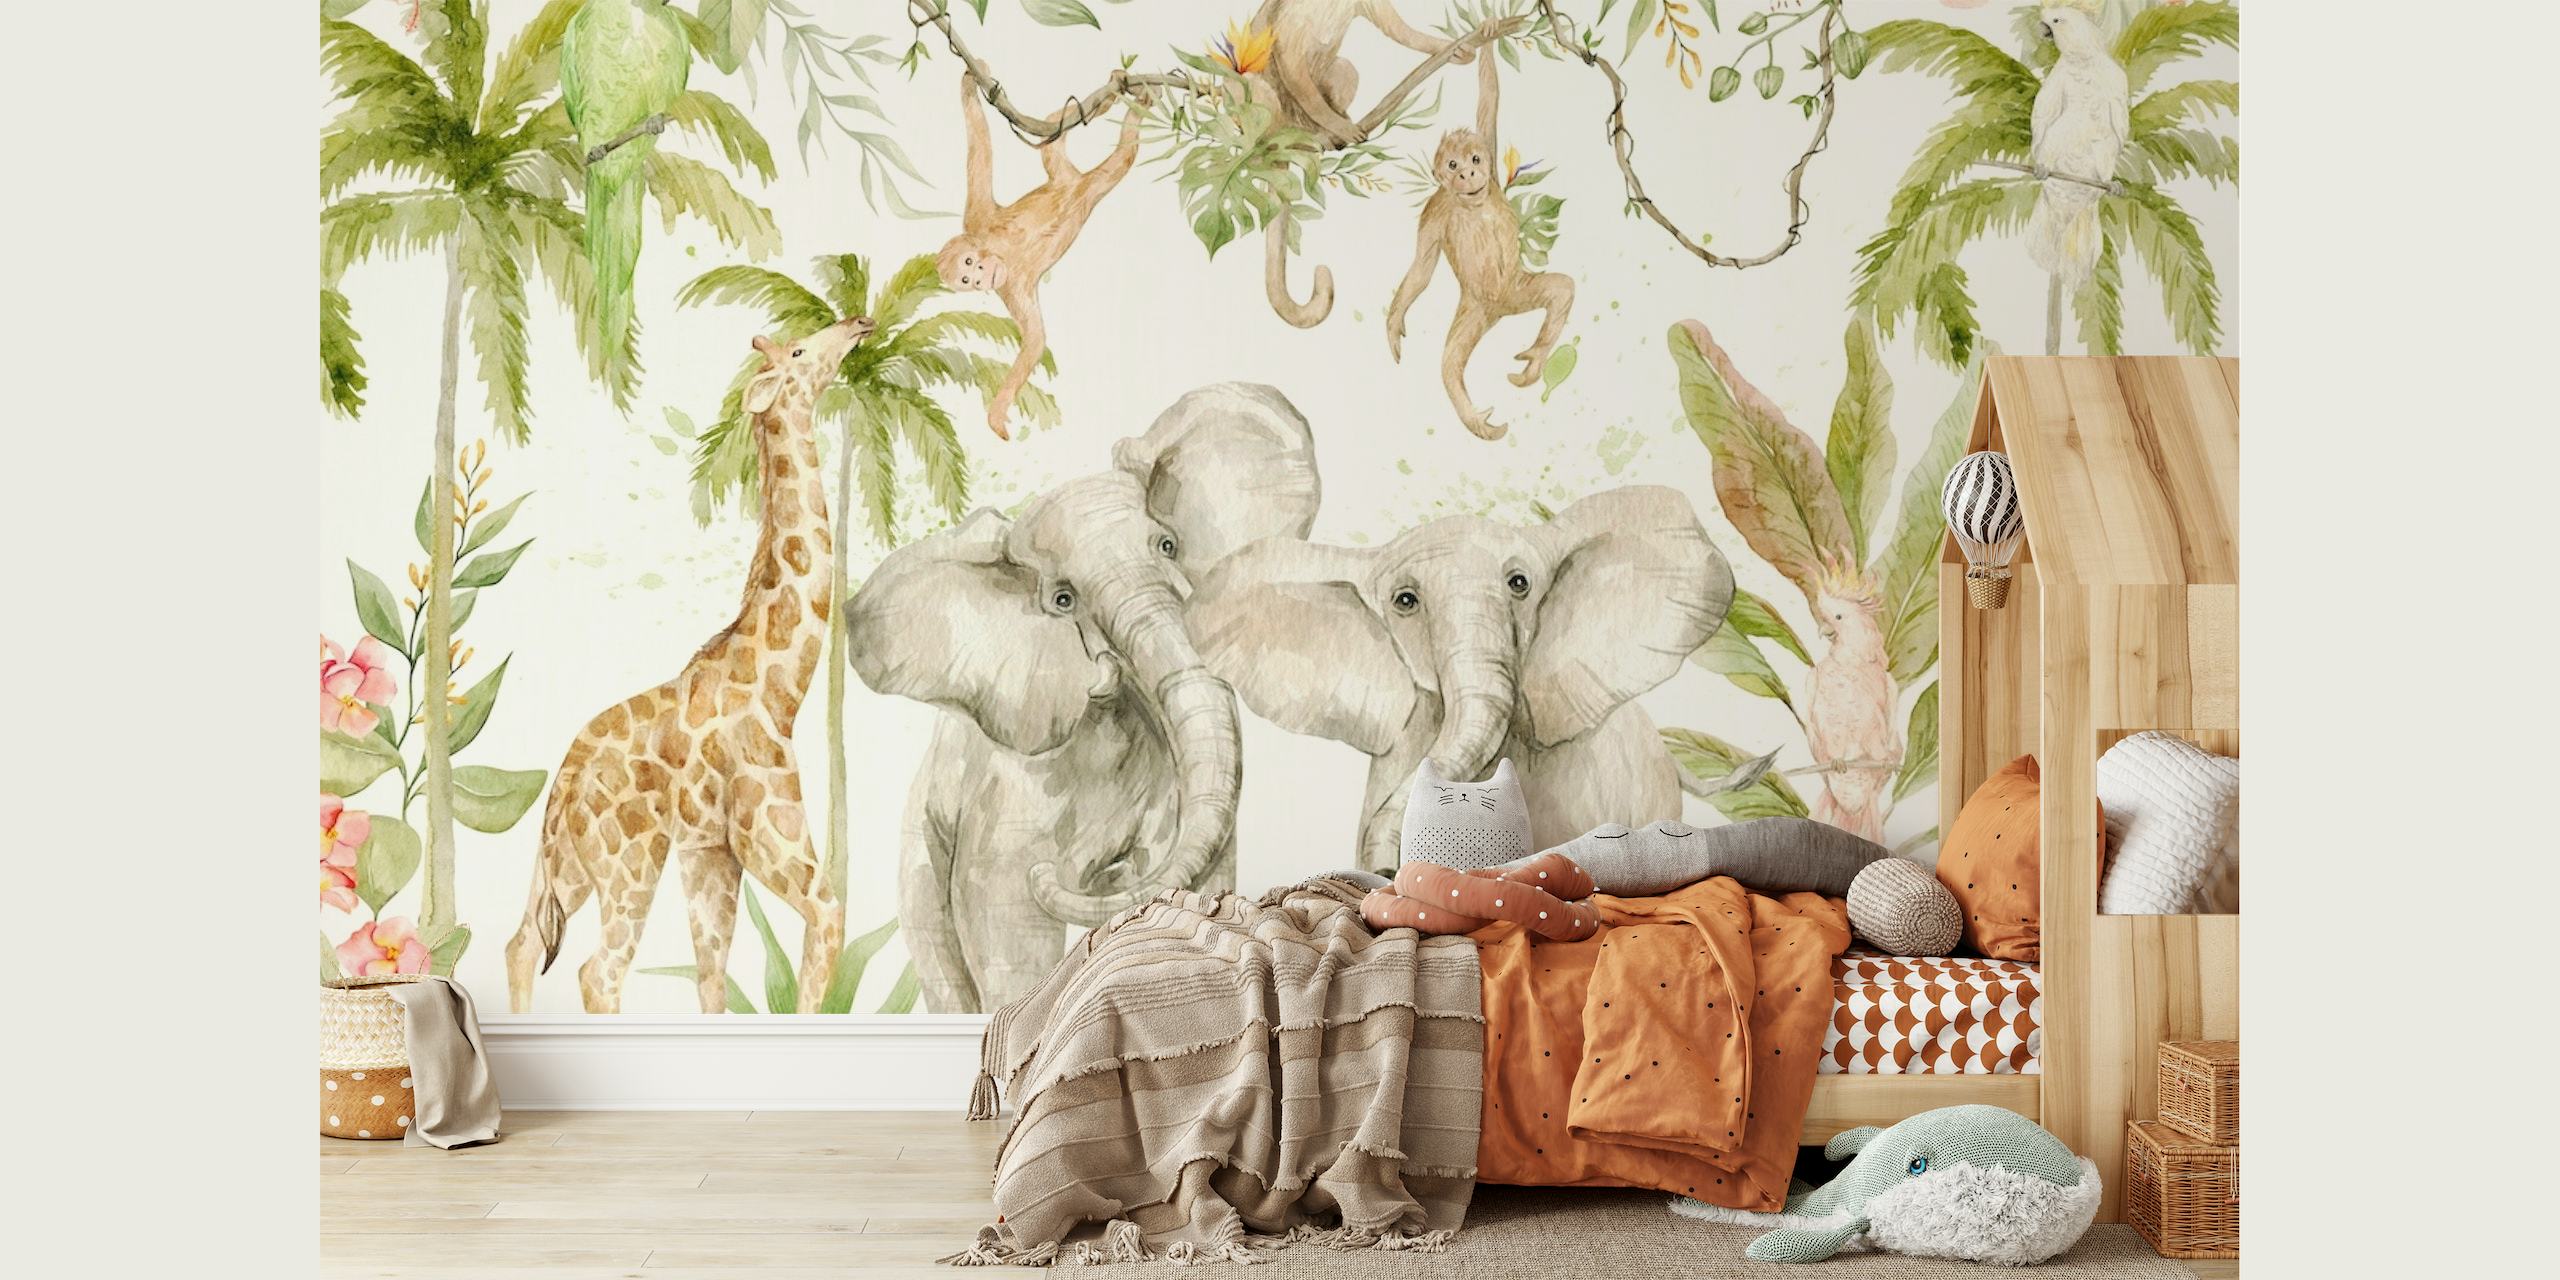 Peinture murale de style peinte à la main représentant une scène de jungle de safari tropical avec des éléphants, des girafes et des singes parmi la verdure